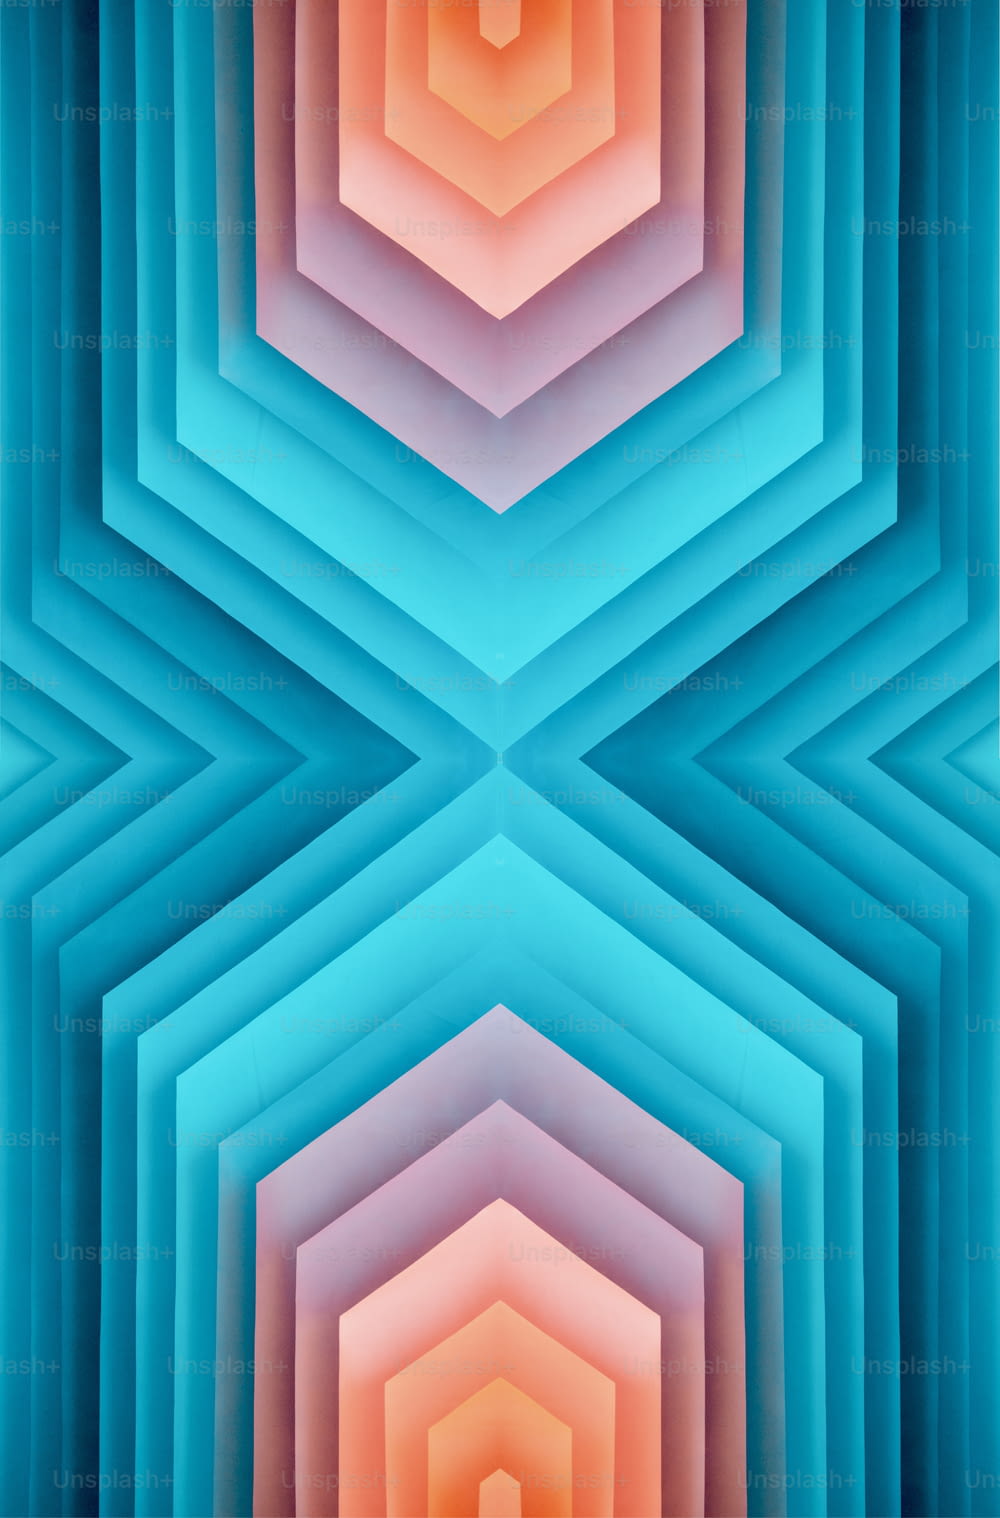 Una imagen abstracta de una estructura hexagonal